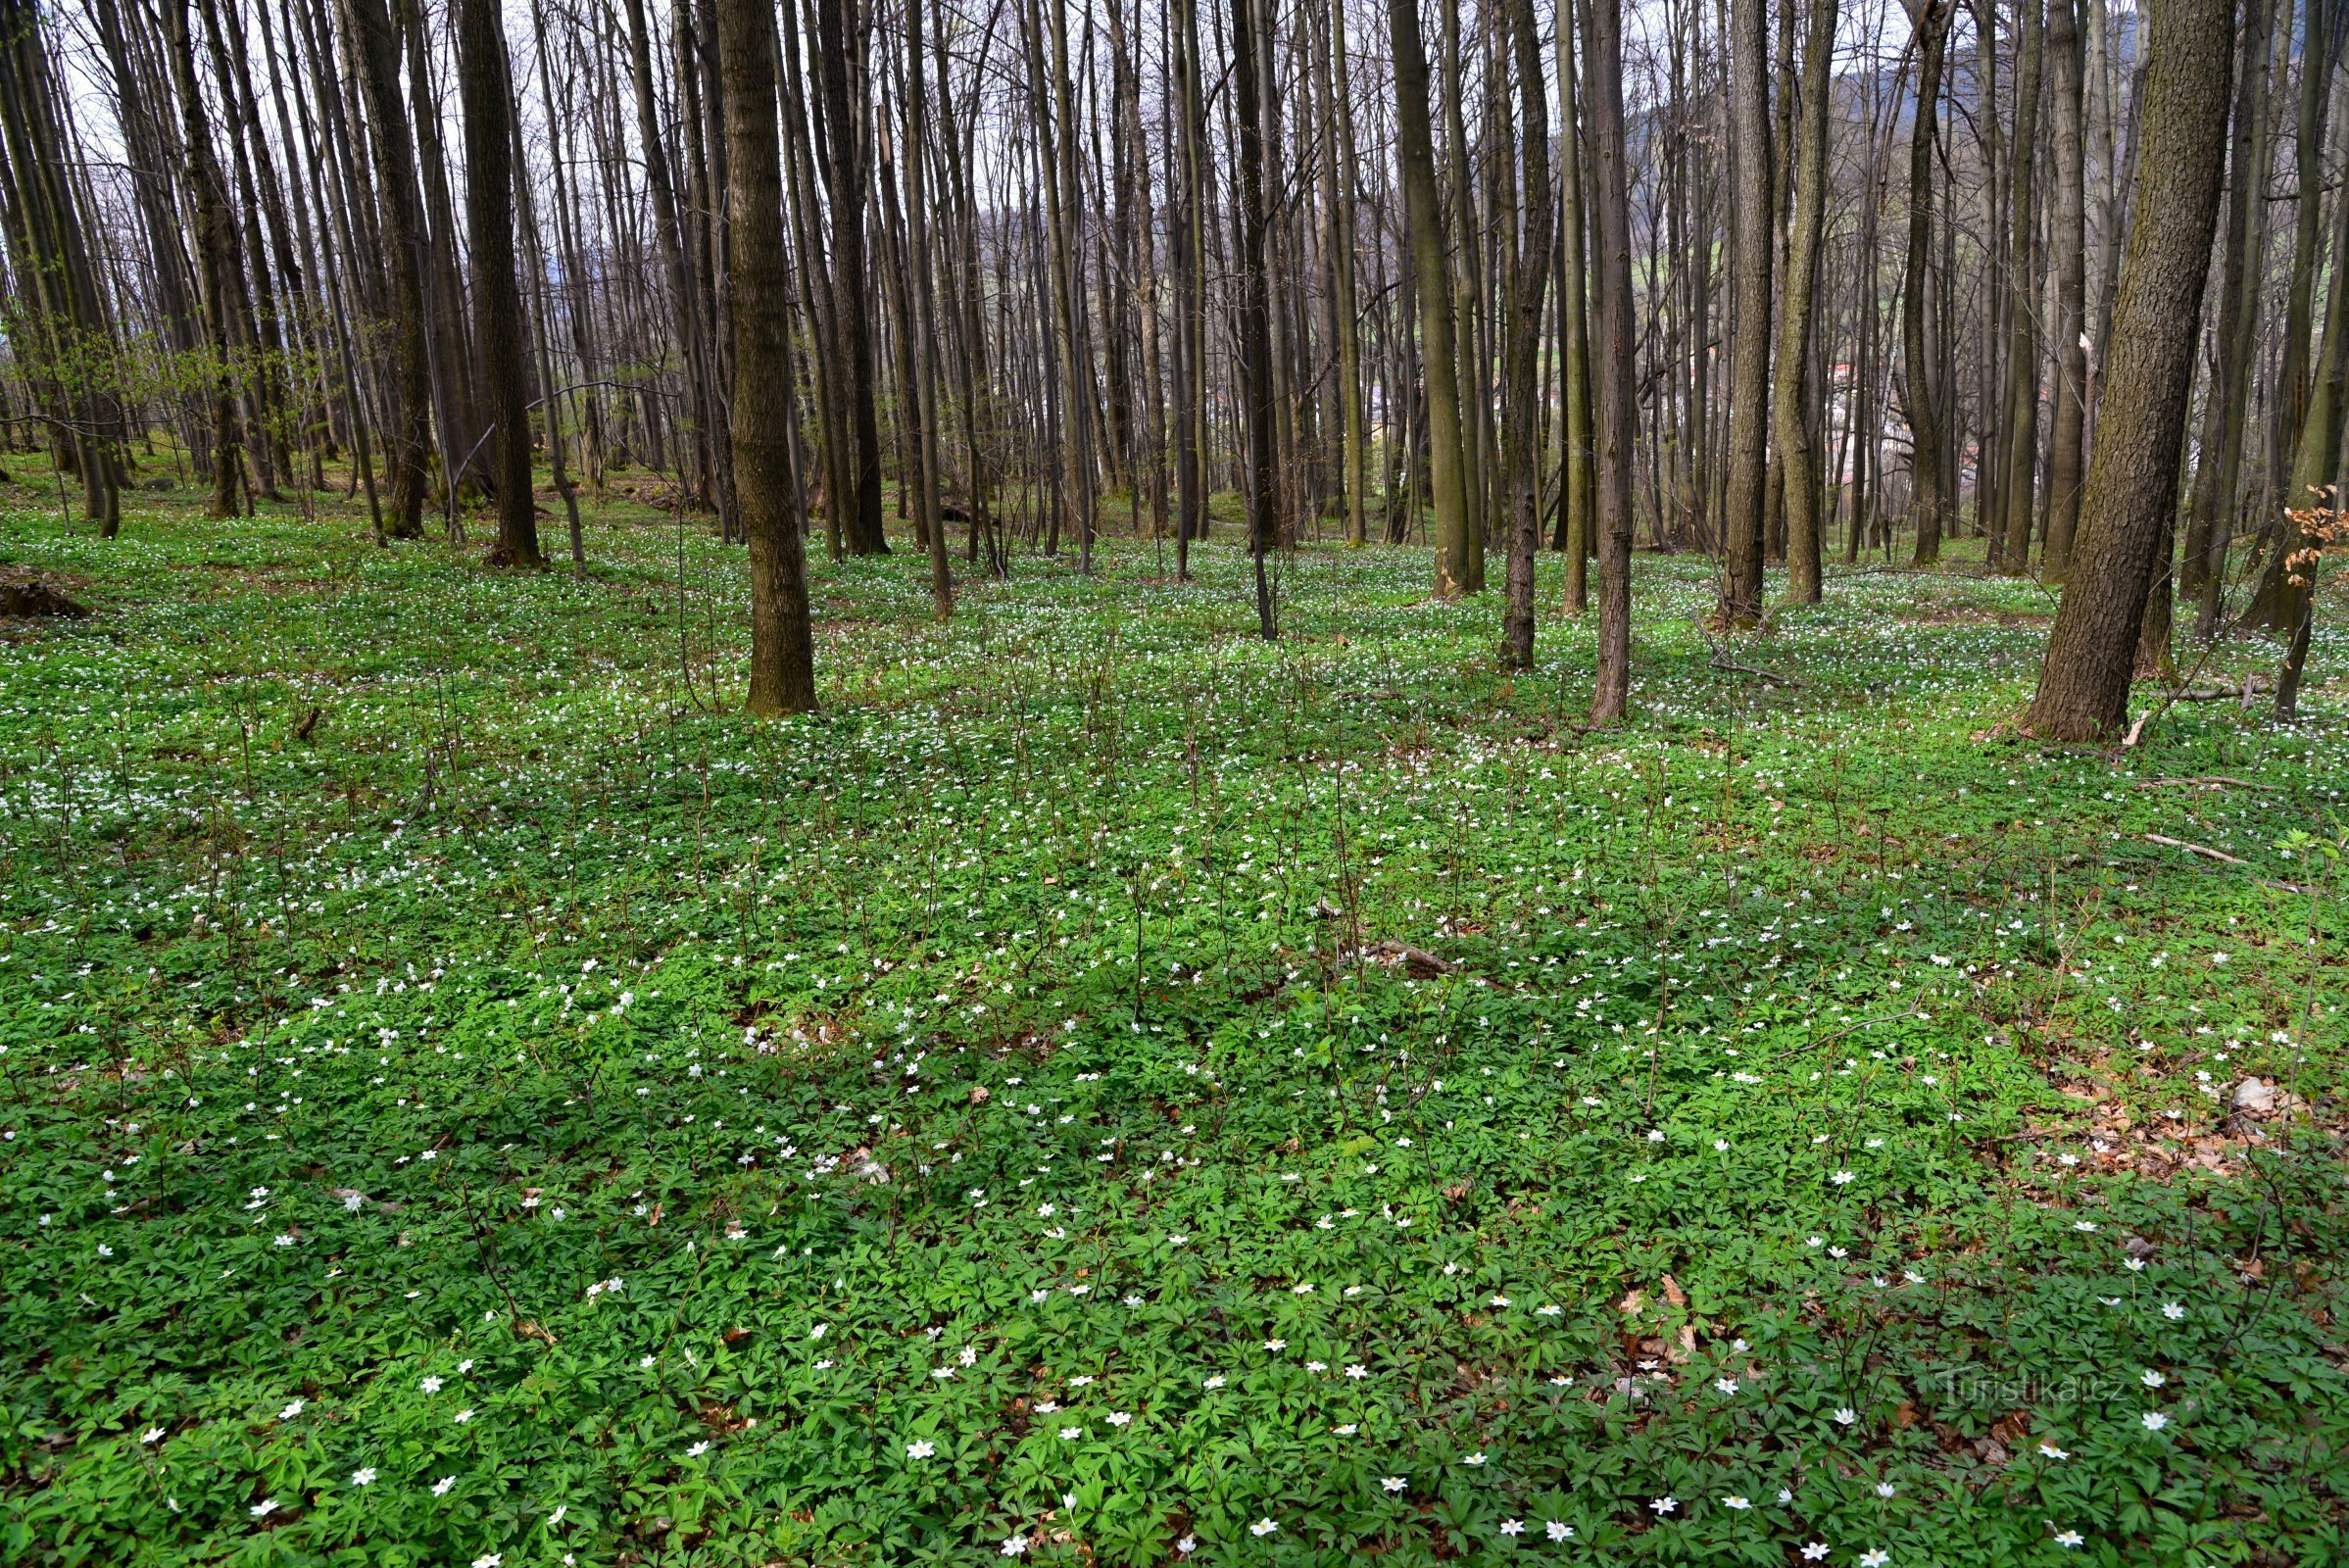 ズラトホルスカー・ヴルチョヴィナ: チェスカー・ヴシーにある春のような森